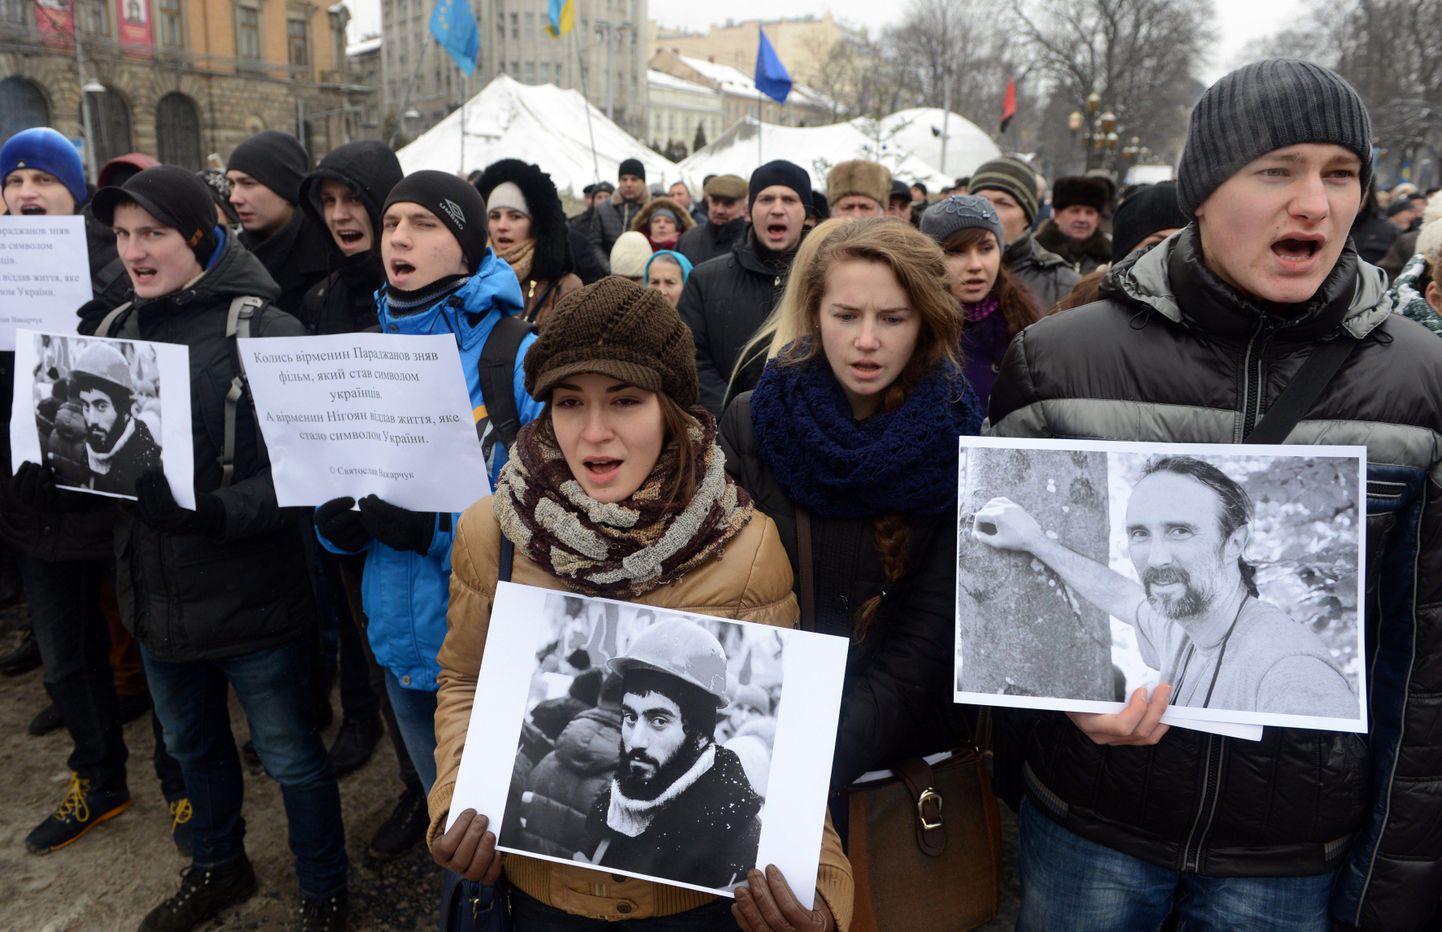 Lvivis toimus täna rahutustes hukkunute mälestamine.